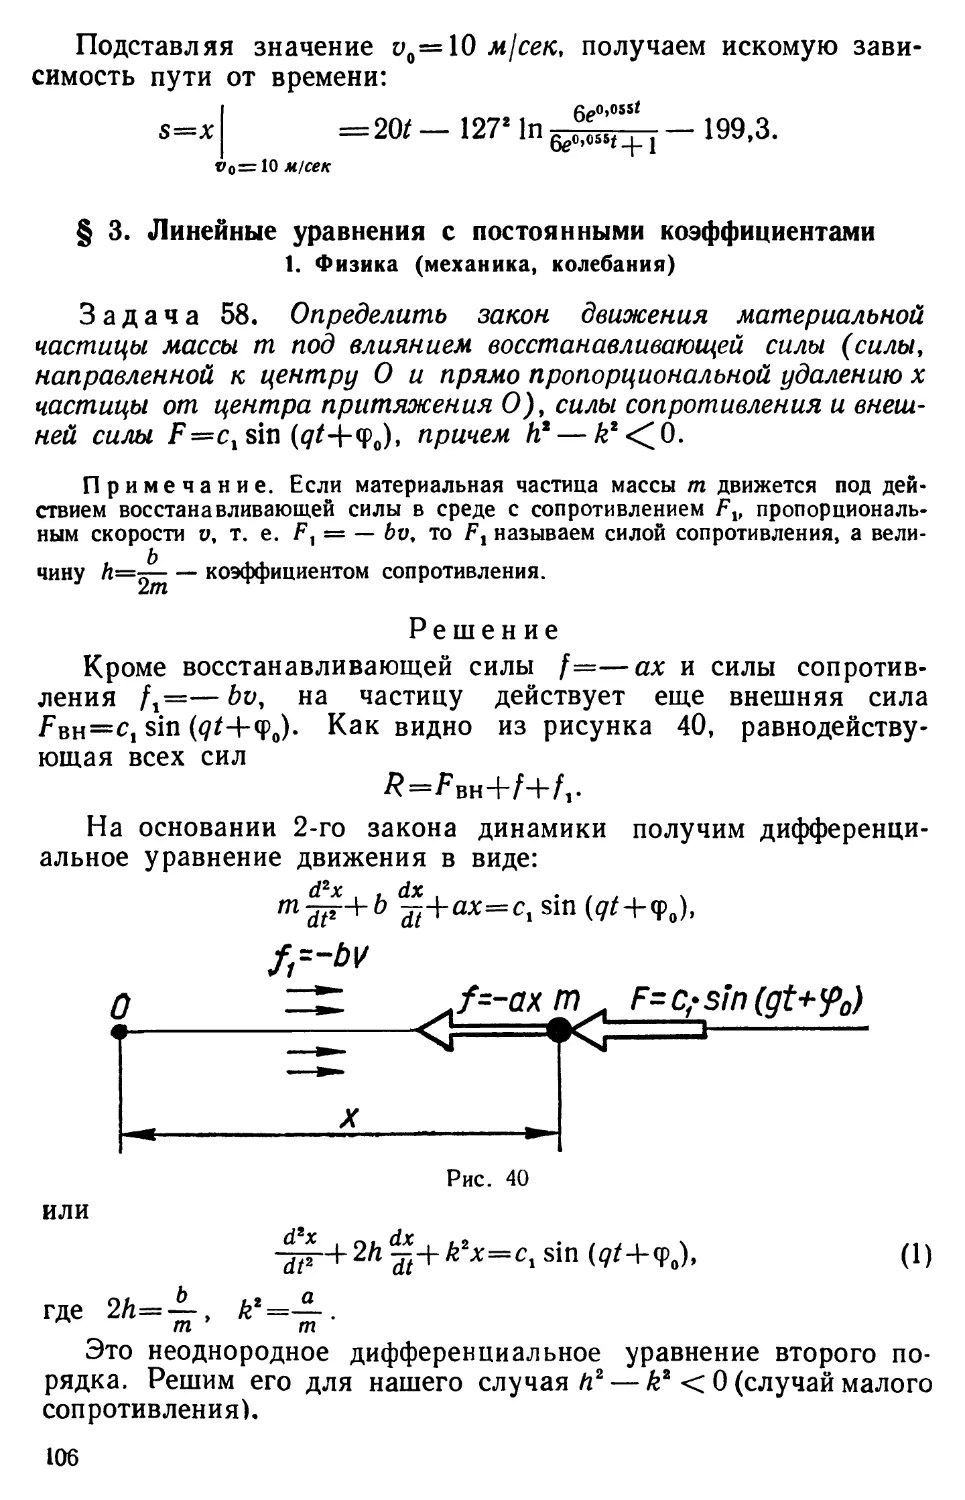 § 3. Линейные уравнения с постоянными коэффициентами